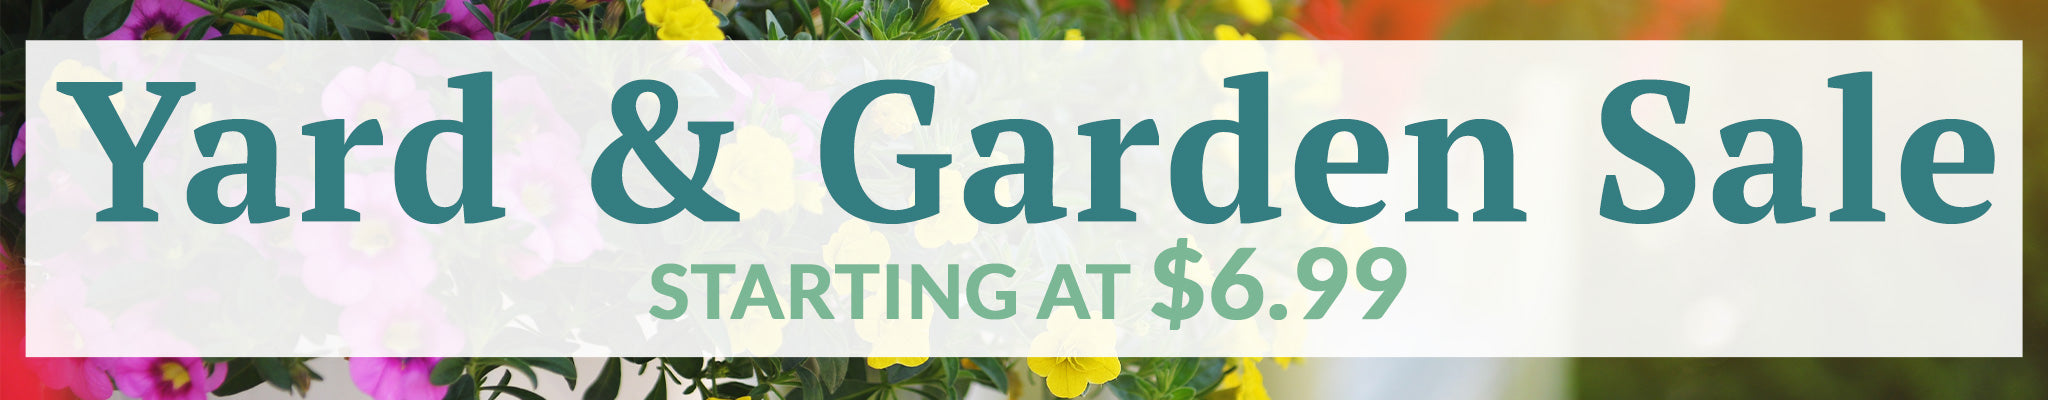 Yard & Garden Sale